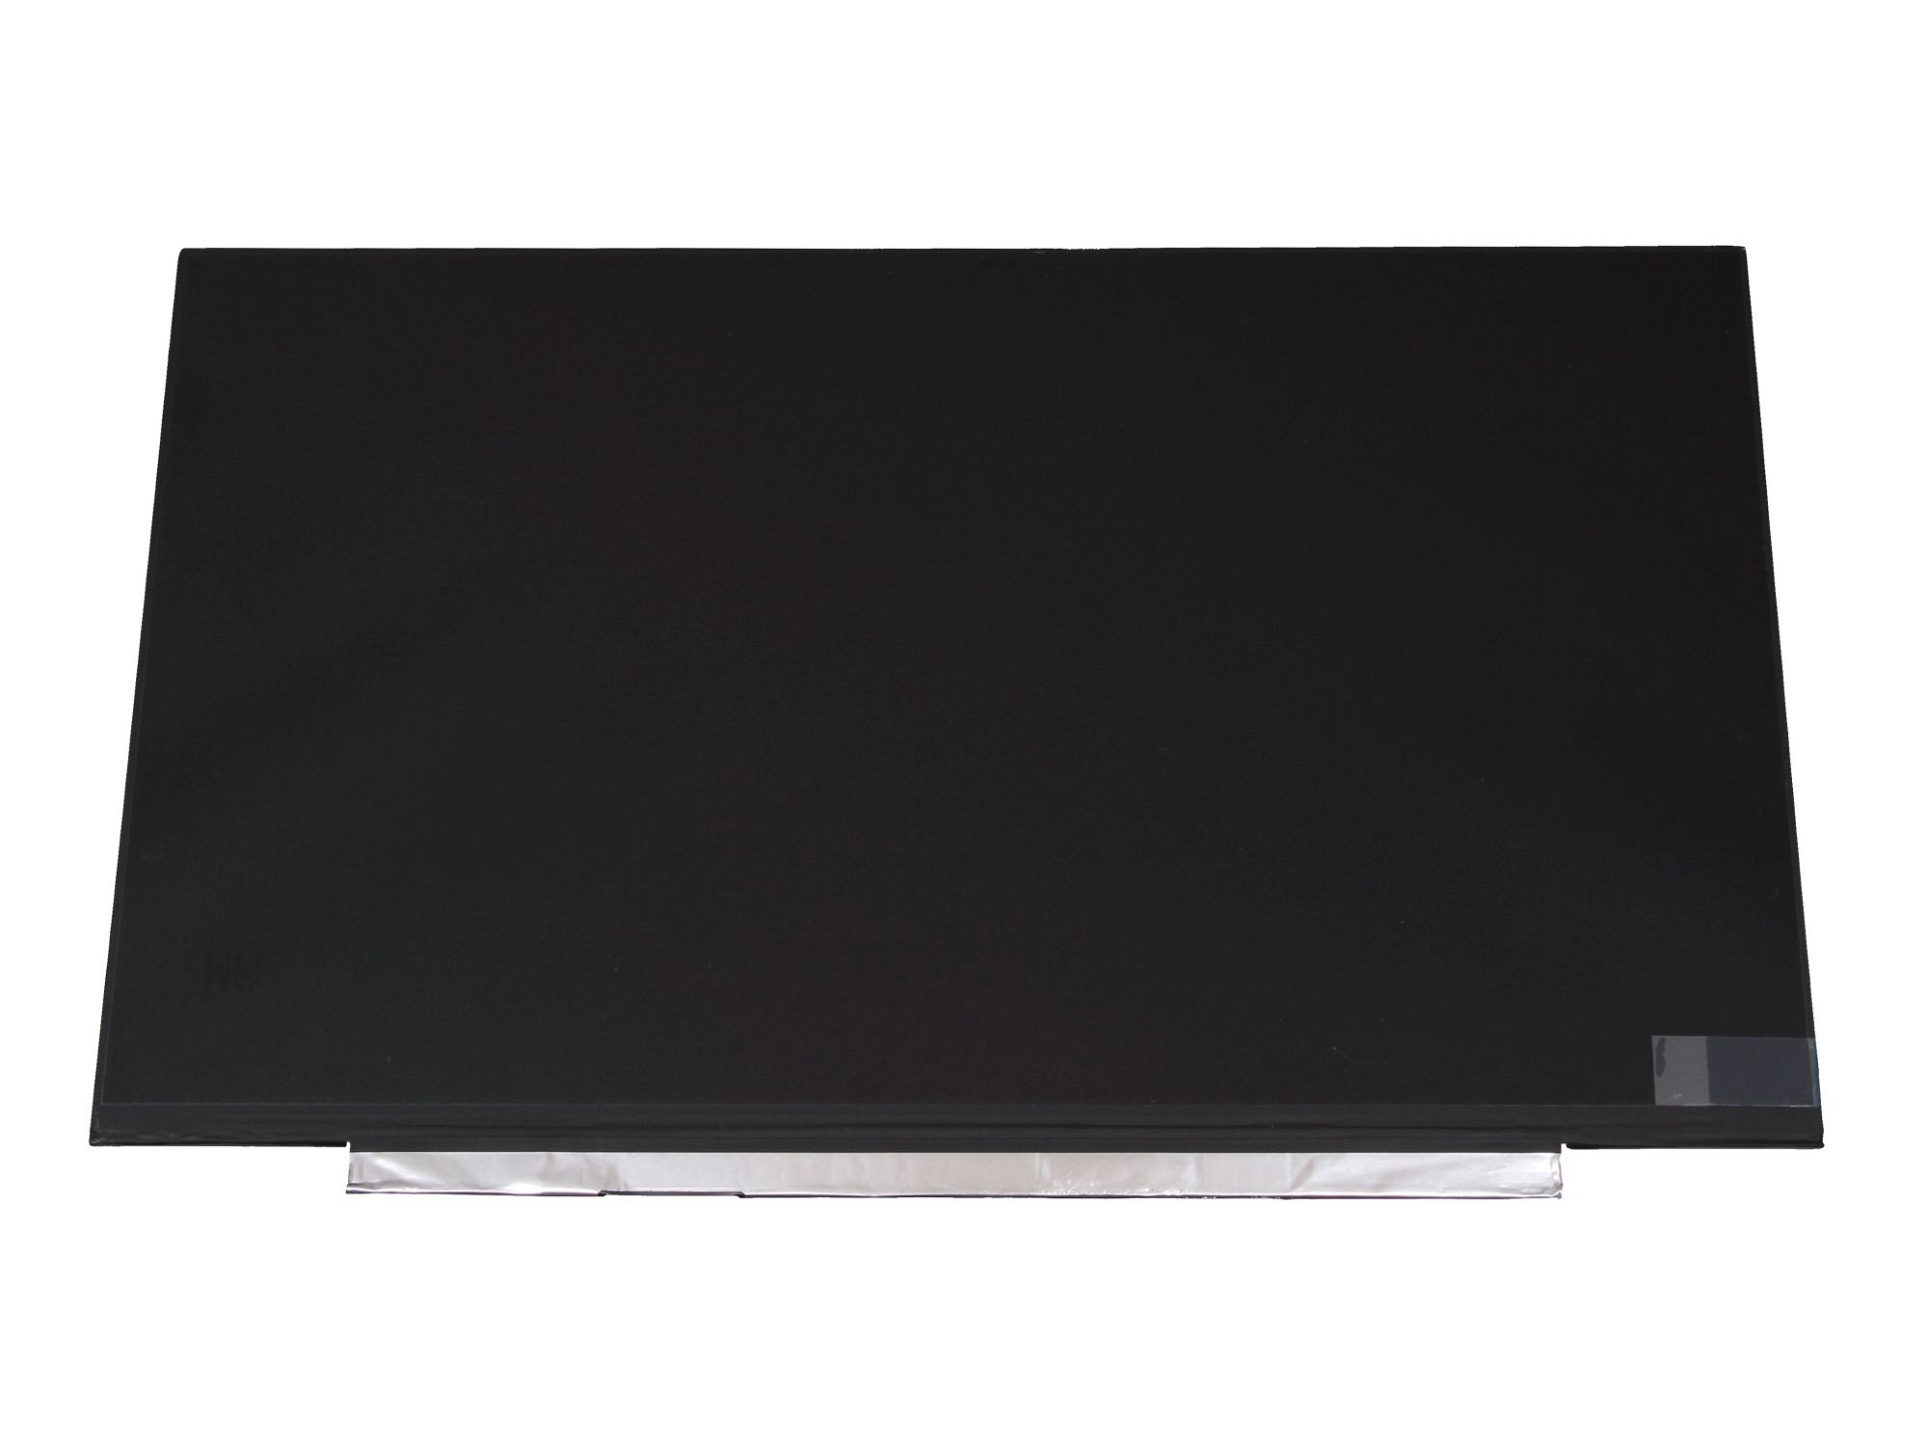 Lenovo 01YN156 LED Display (1920x1080) matt slimline Alternative